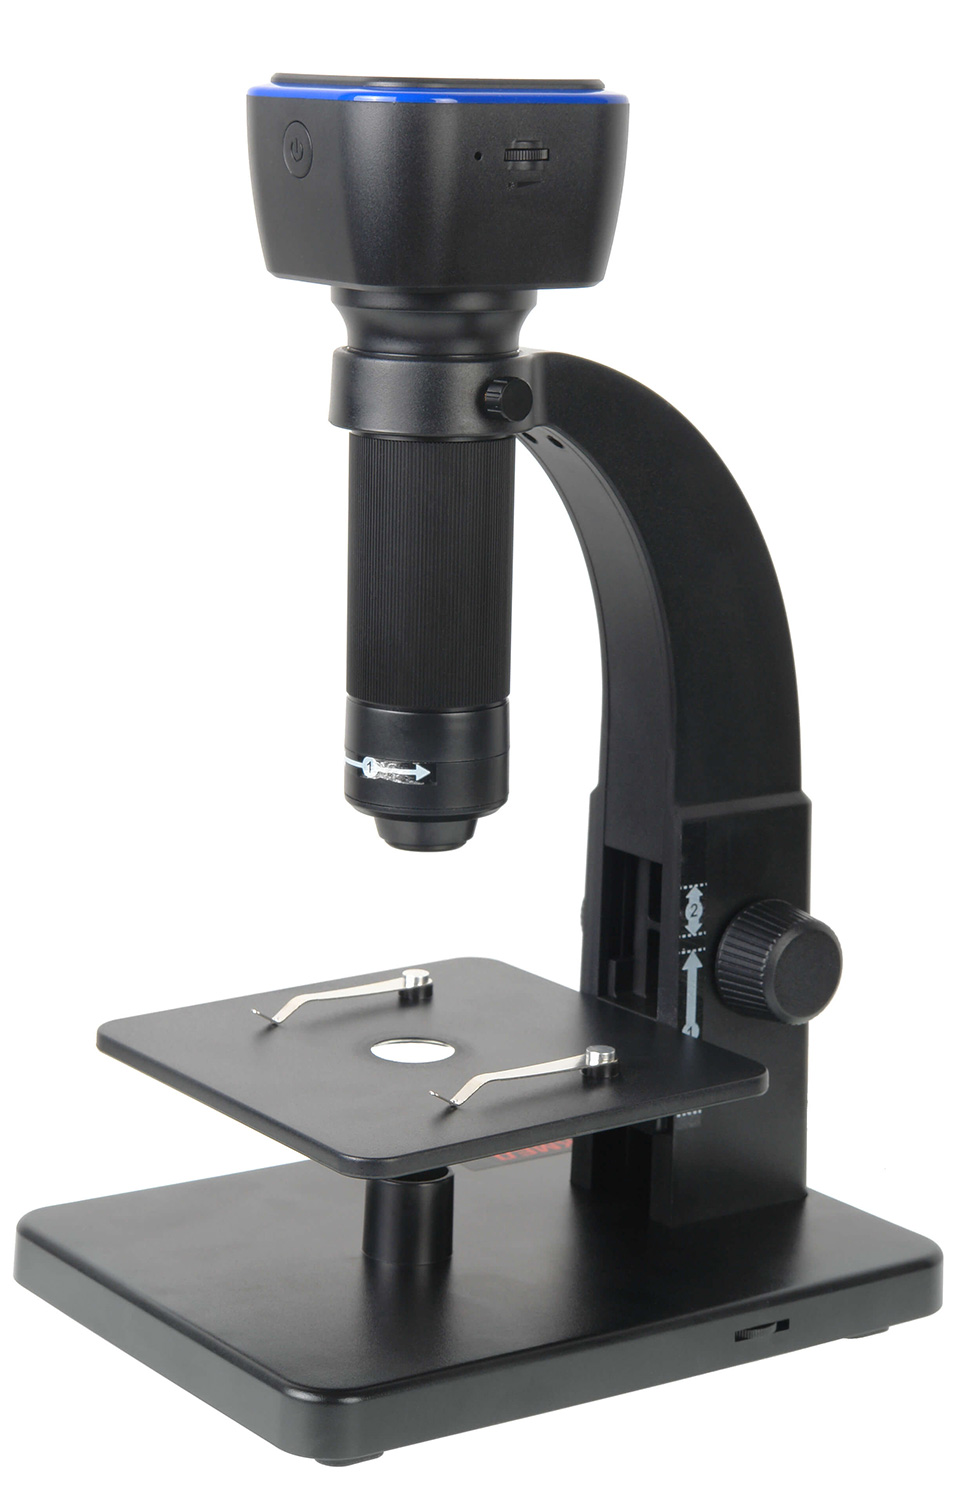 

Микроскоп цифровой Микмед Wi-Fi 2000Х 5.0